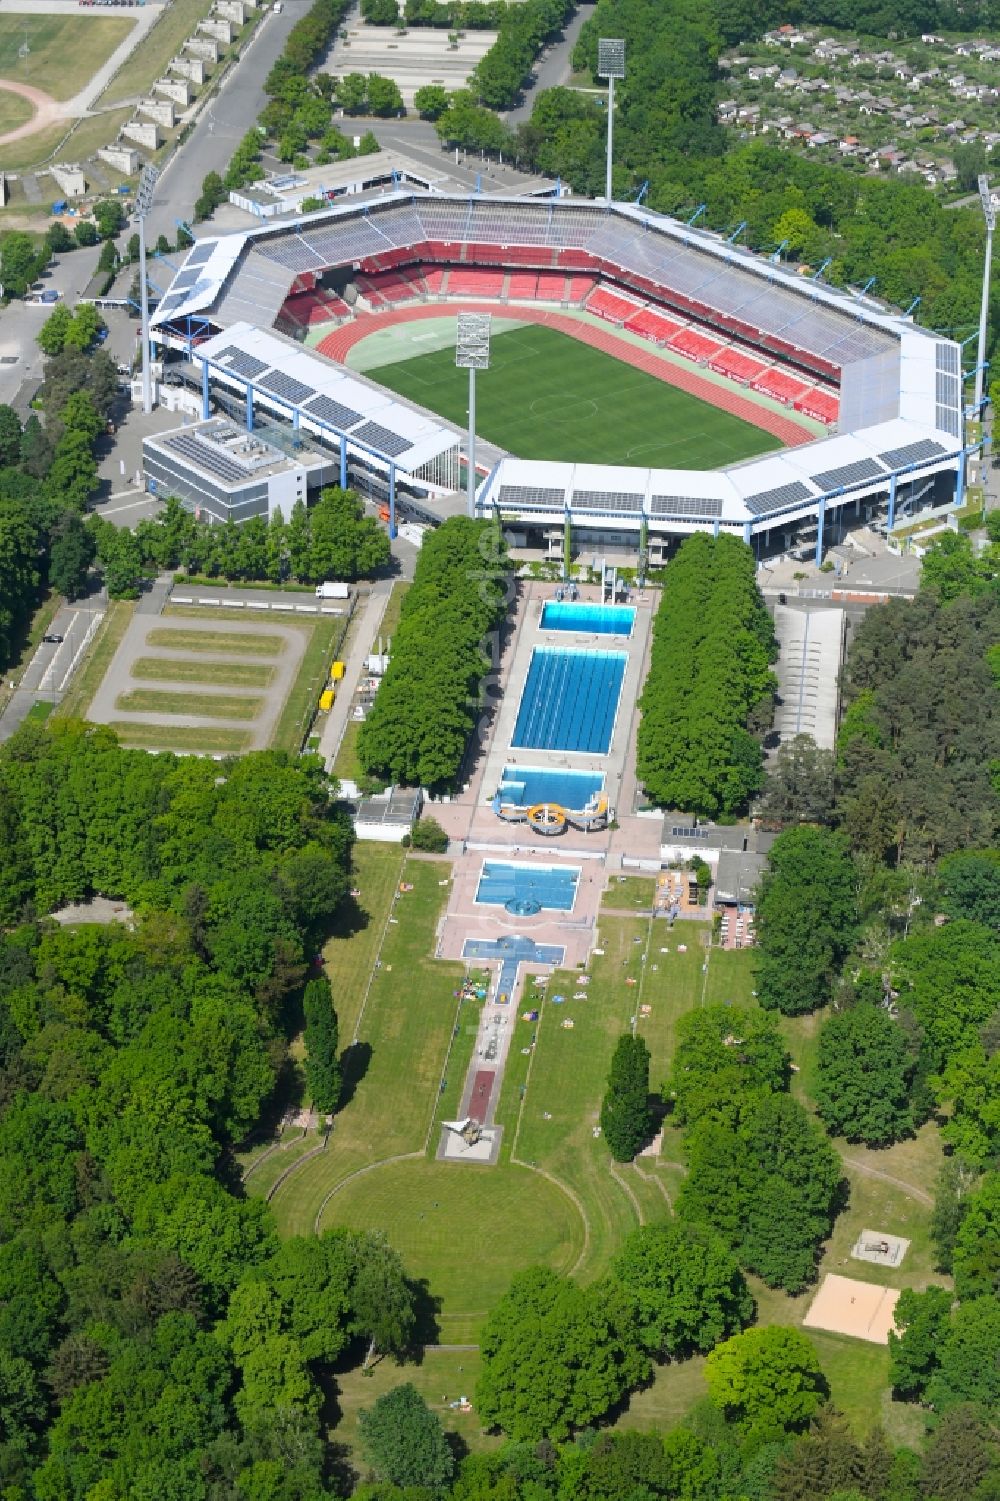 Nürnberg aus der Vogelperspektive: Schwimmbecken des Freibades Freibad Stadion in Nürnberg im Bundesland Bayern, Deutschland